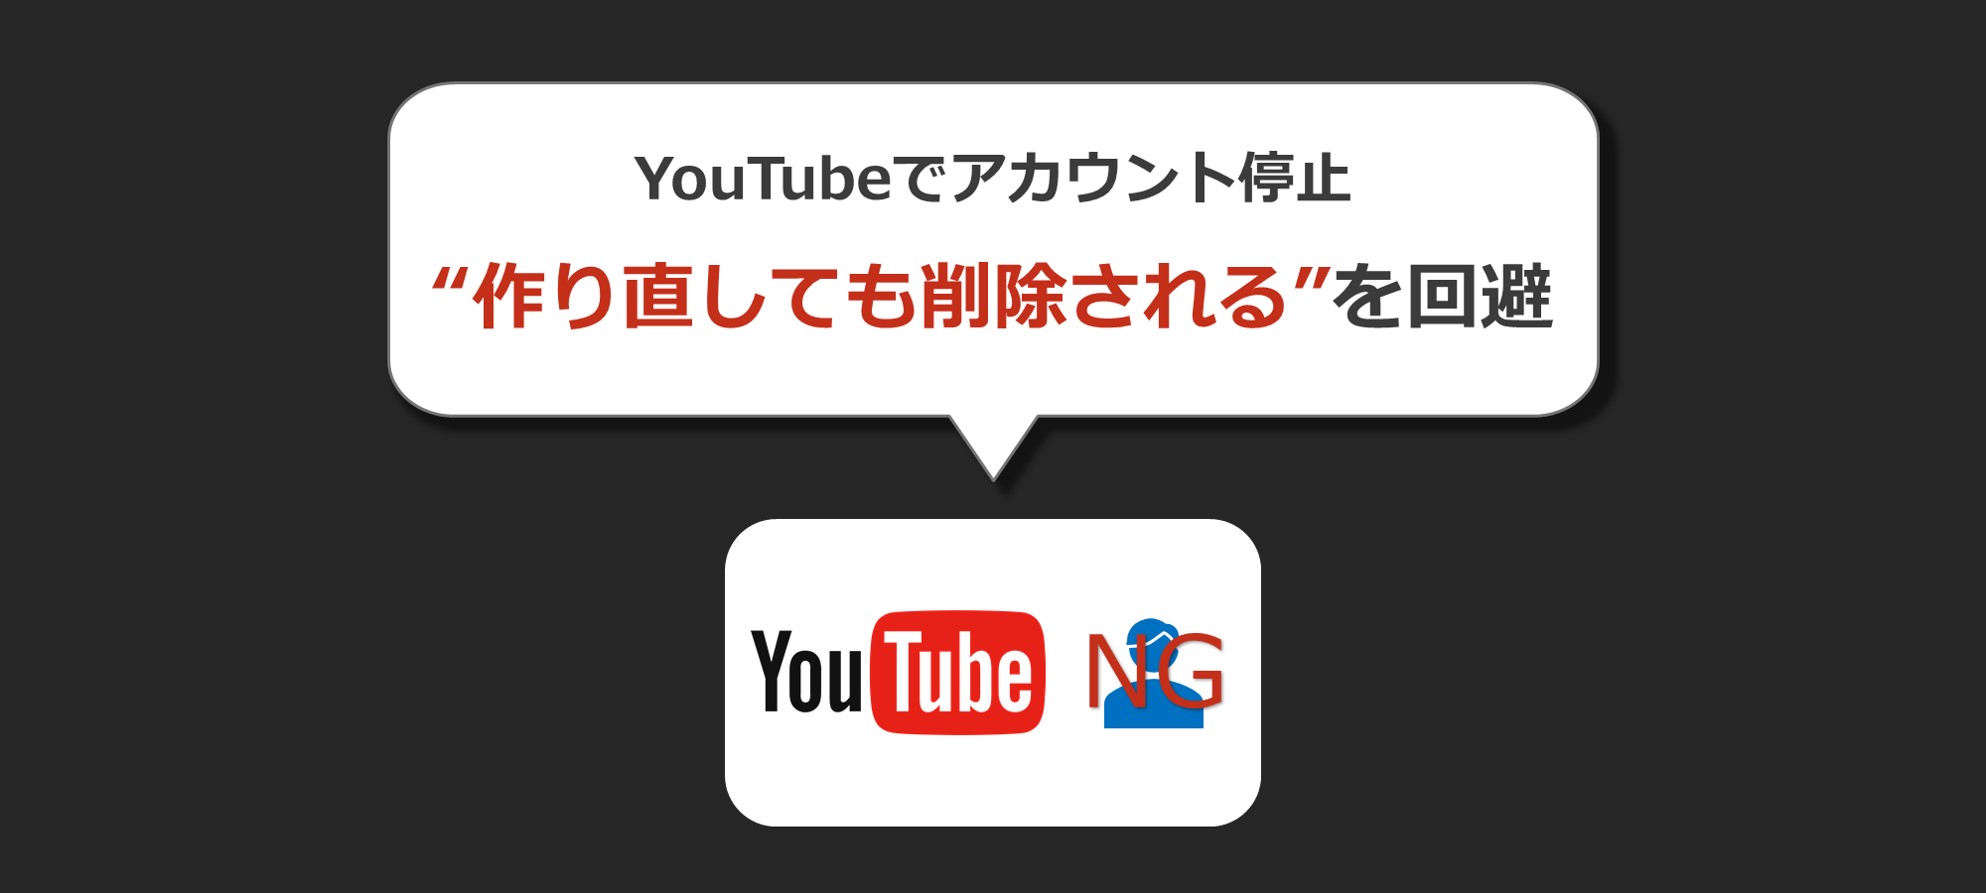 Youtubeアカウント削除 停止後に再登録や動画アップできます Solabo あきらめない雑記